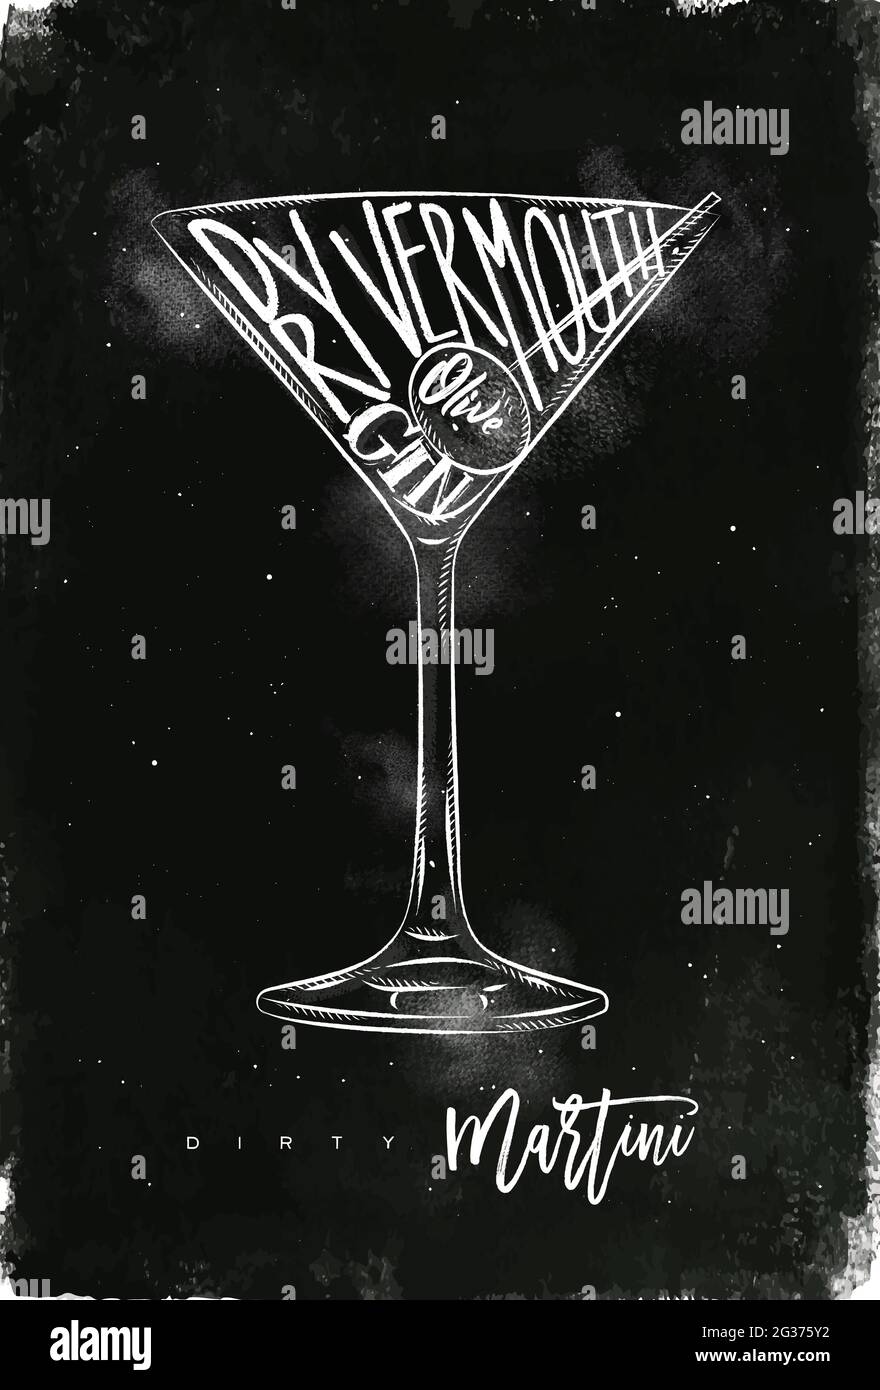 Cocktail martini sale lettrage vermouth sec, gin, olive dans le style graphique vintage dessin avec craie sur fond de tableau noir Illustration de Vecteur